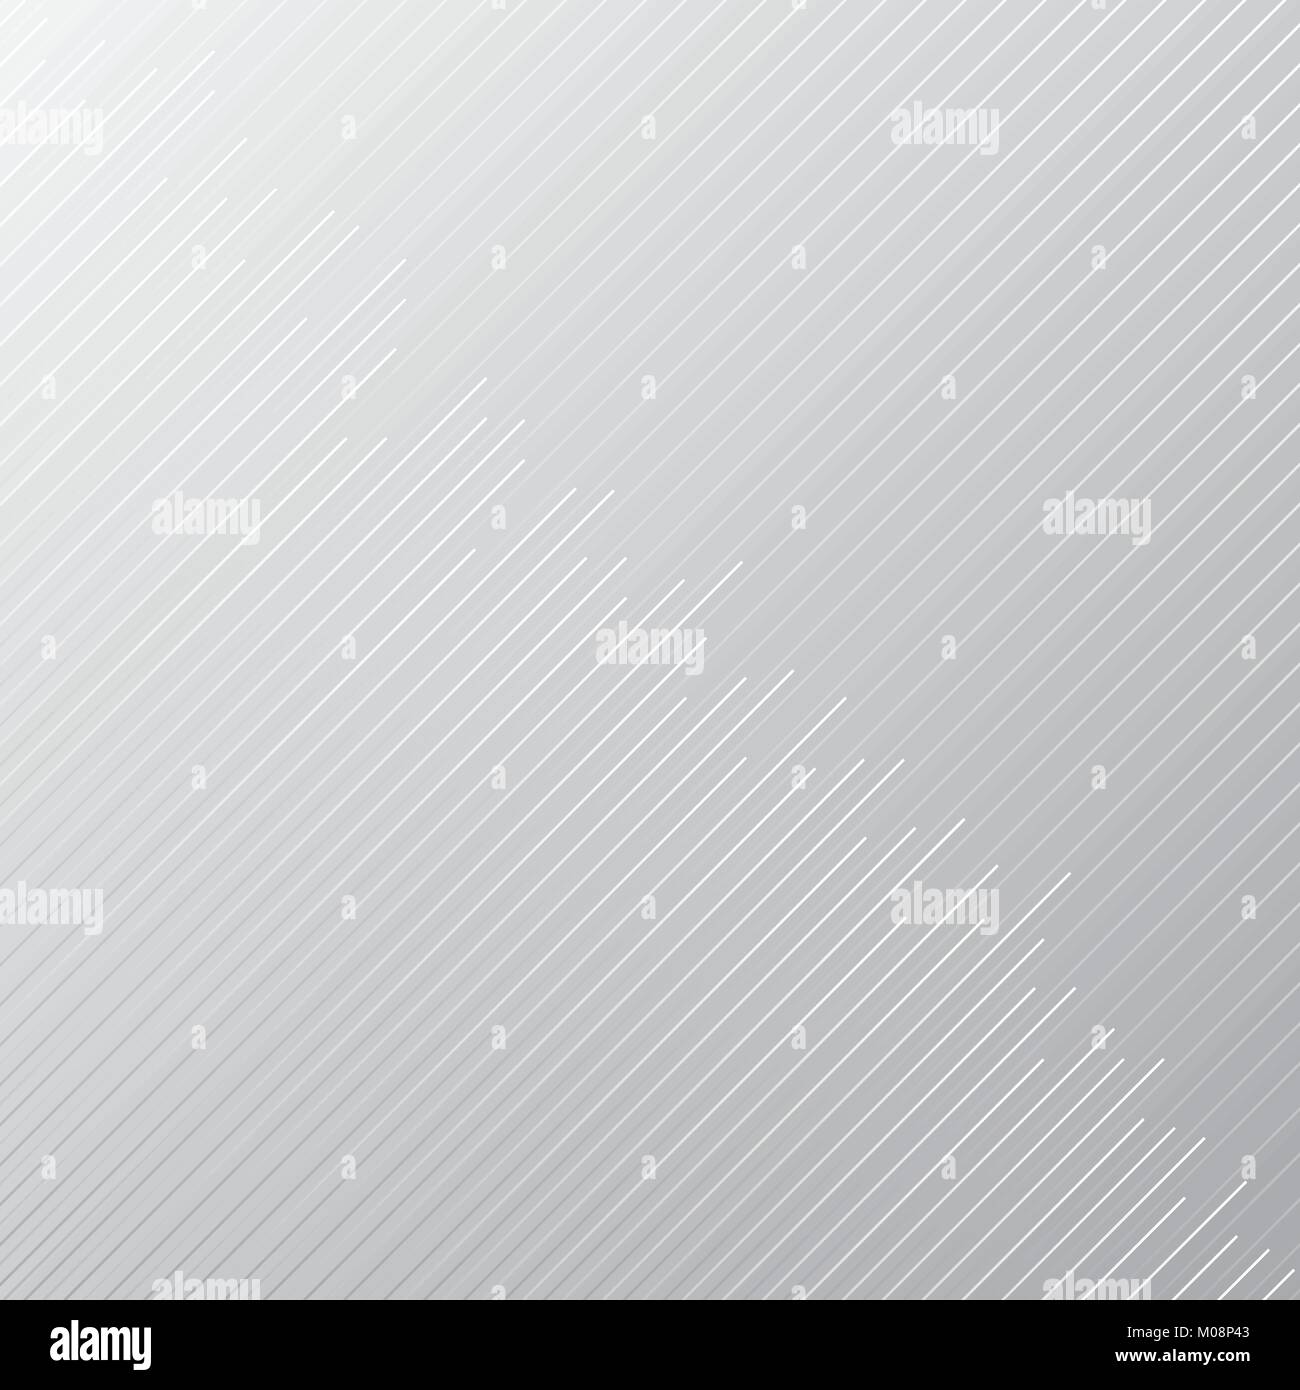 Résumé minimaliste stripe et motif de lignes diagonales sur fond blanc et gris et la texture. Vector illustration. Illustration de Vecteur